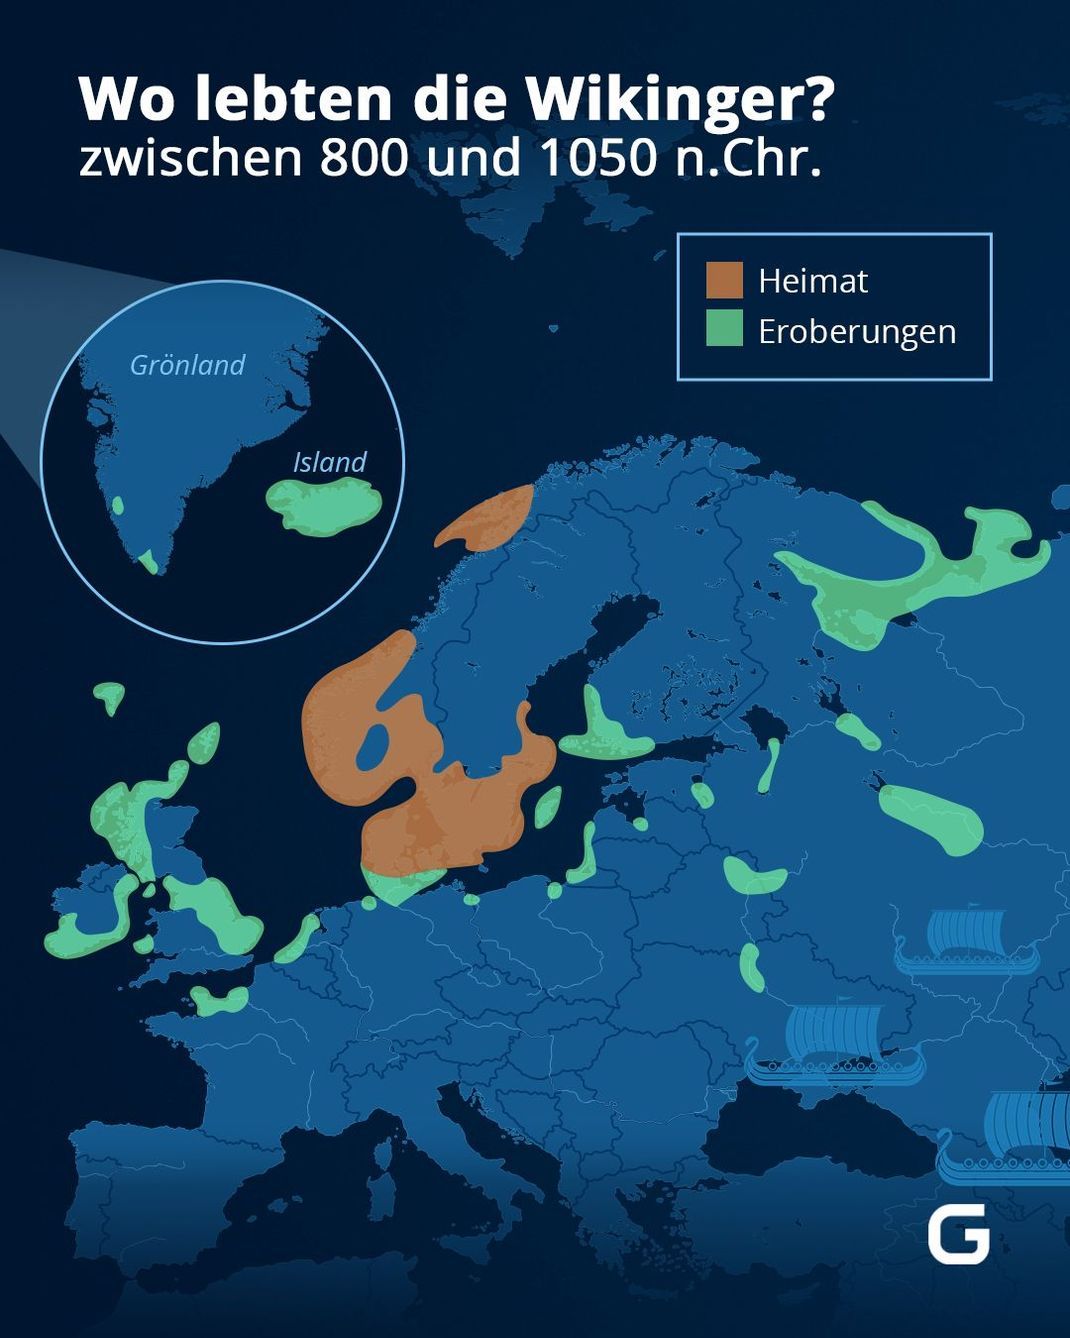 An diesen Orten lebten die Wikinger zwischen 800 und 1050 n.Chr.